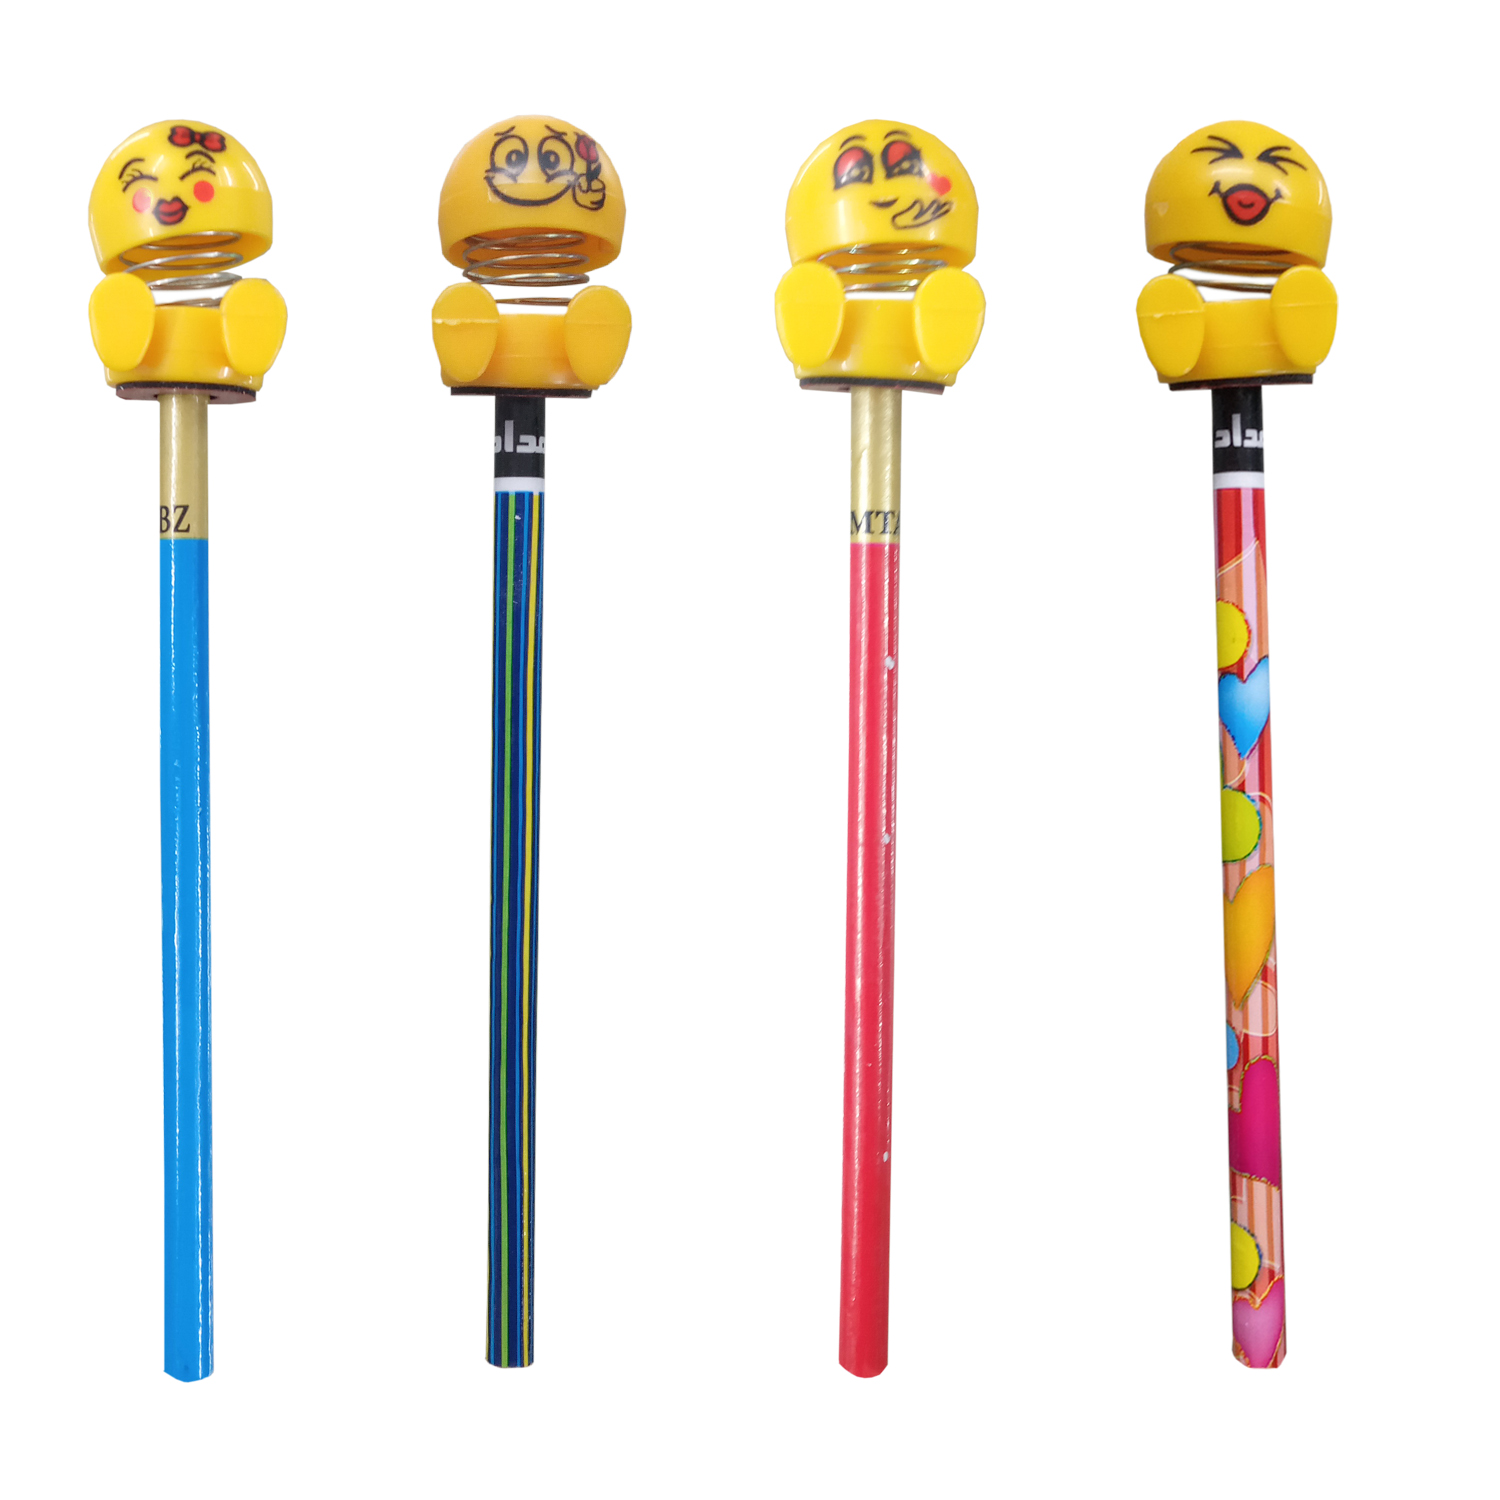 مداد مشکی مدل emoji مجموعه 4 عددی به همراه سر مدادی